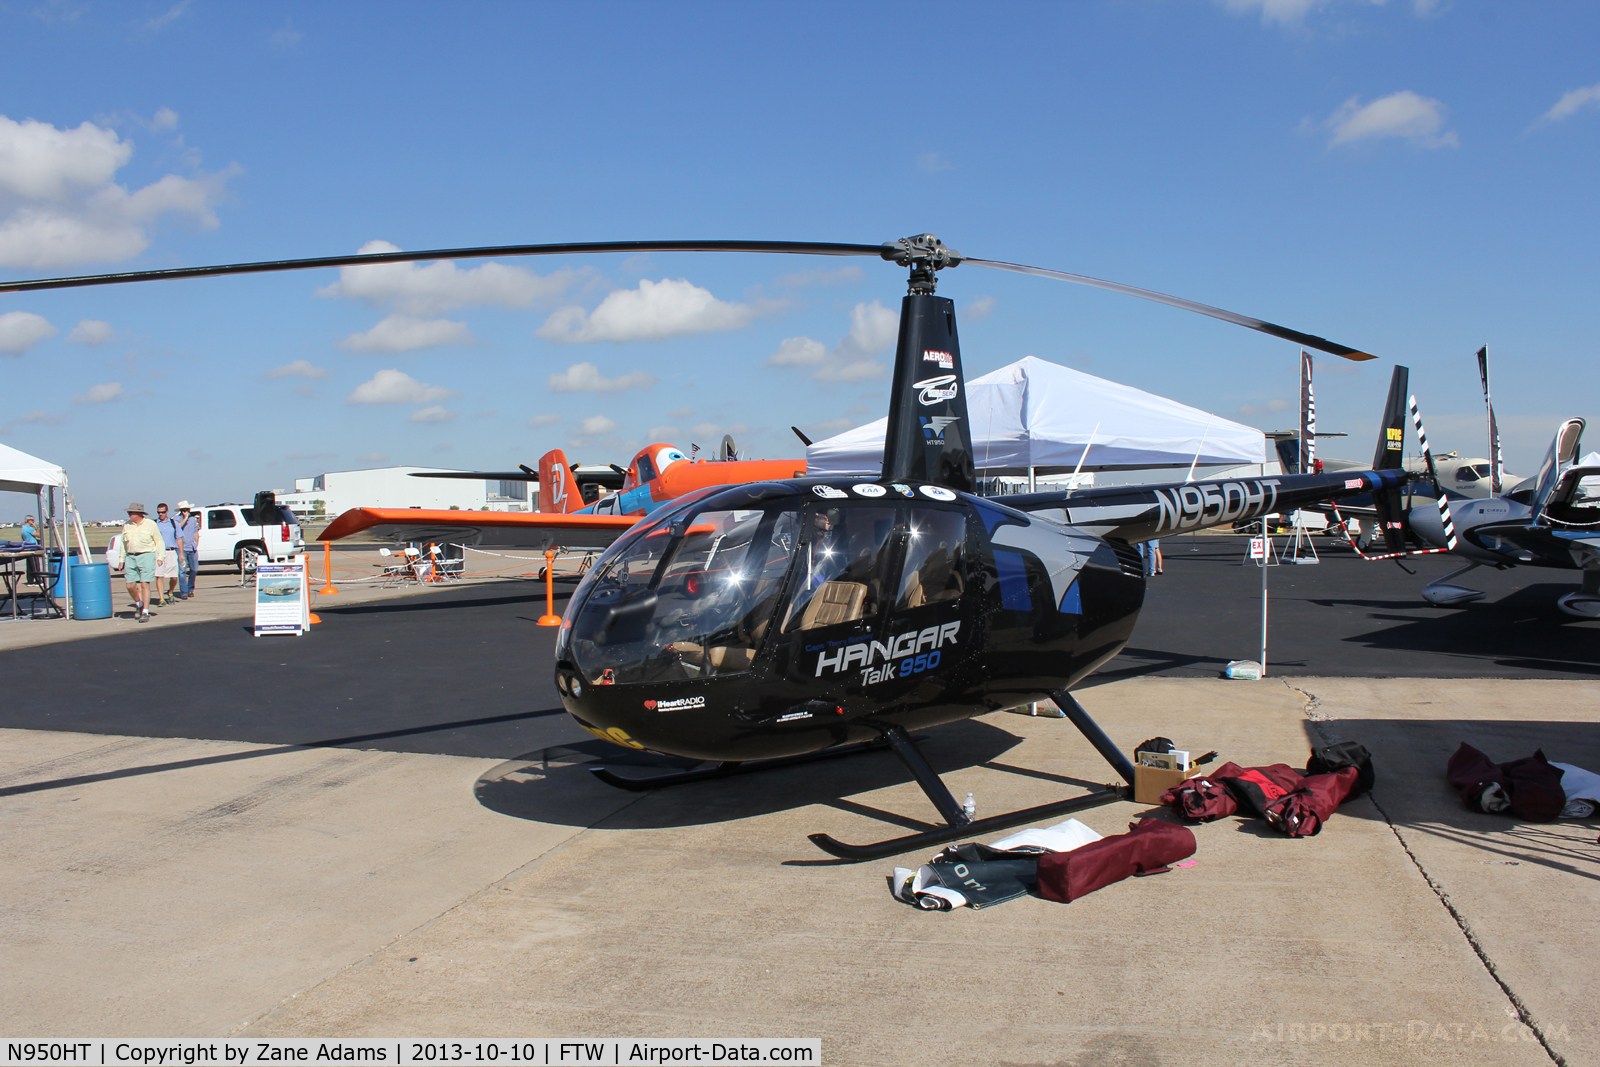 N950HT, 2006 Robinson R44 II C/N 11326, At AOPA Airportfest 2013 - Fort Worth, TX